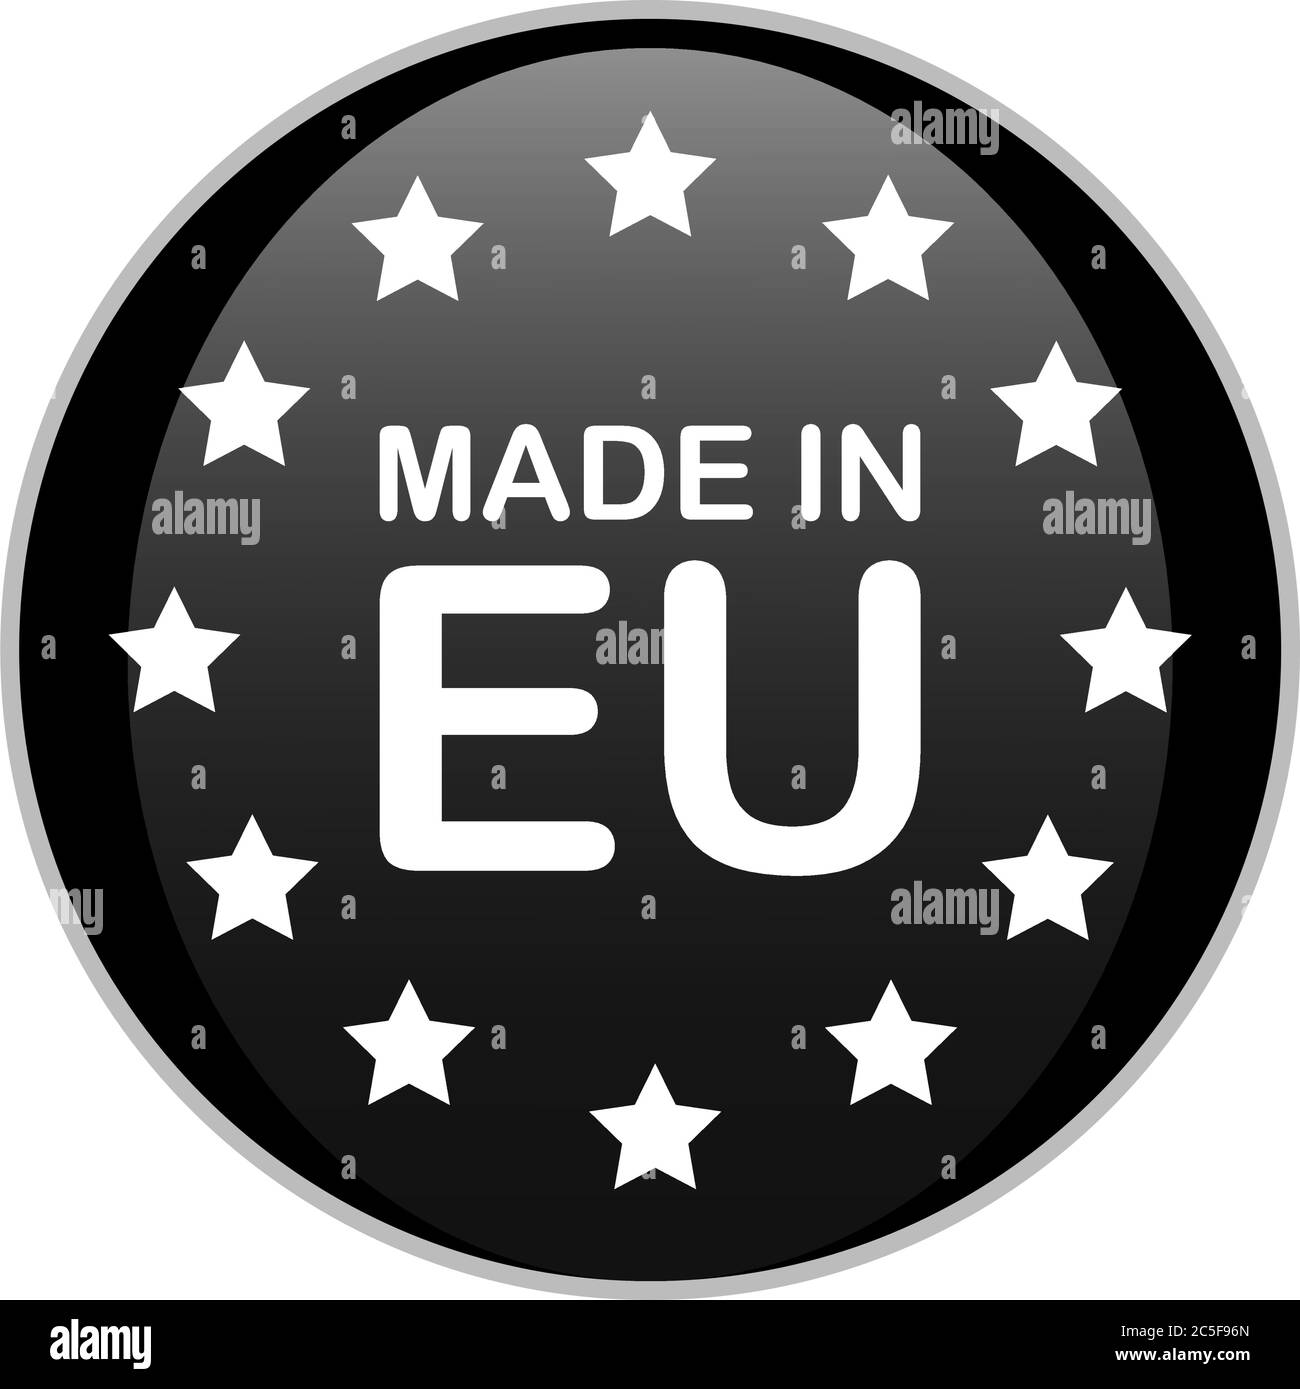 REALIZZATO IN badge rotondo nero EU con testo bianco e stelle. Immagine vettoriale del segno del prodotto europeo isolata su sfondo bianco. Illustrazione Vettoriale